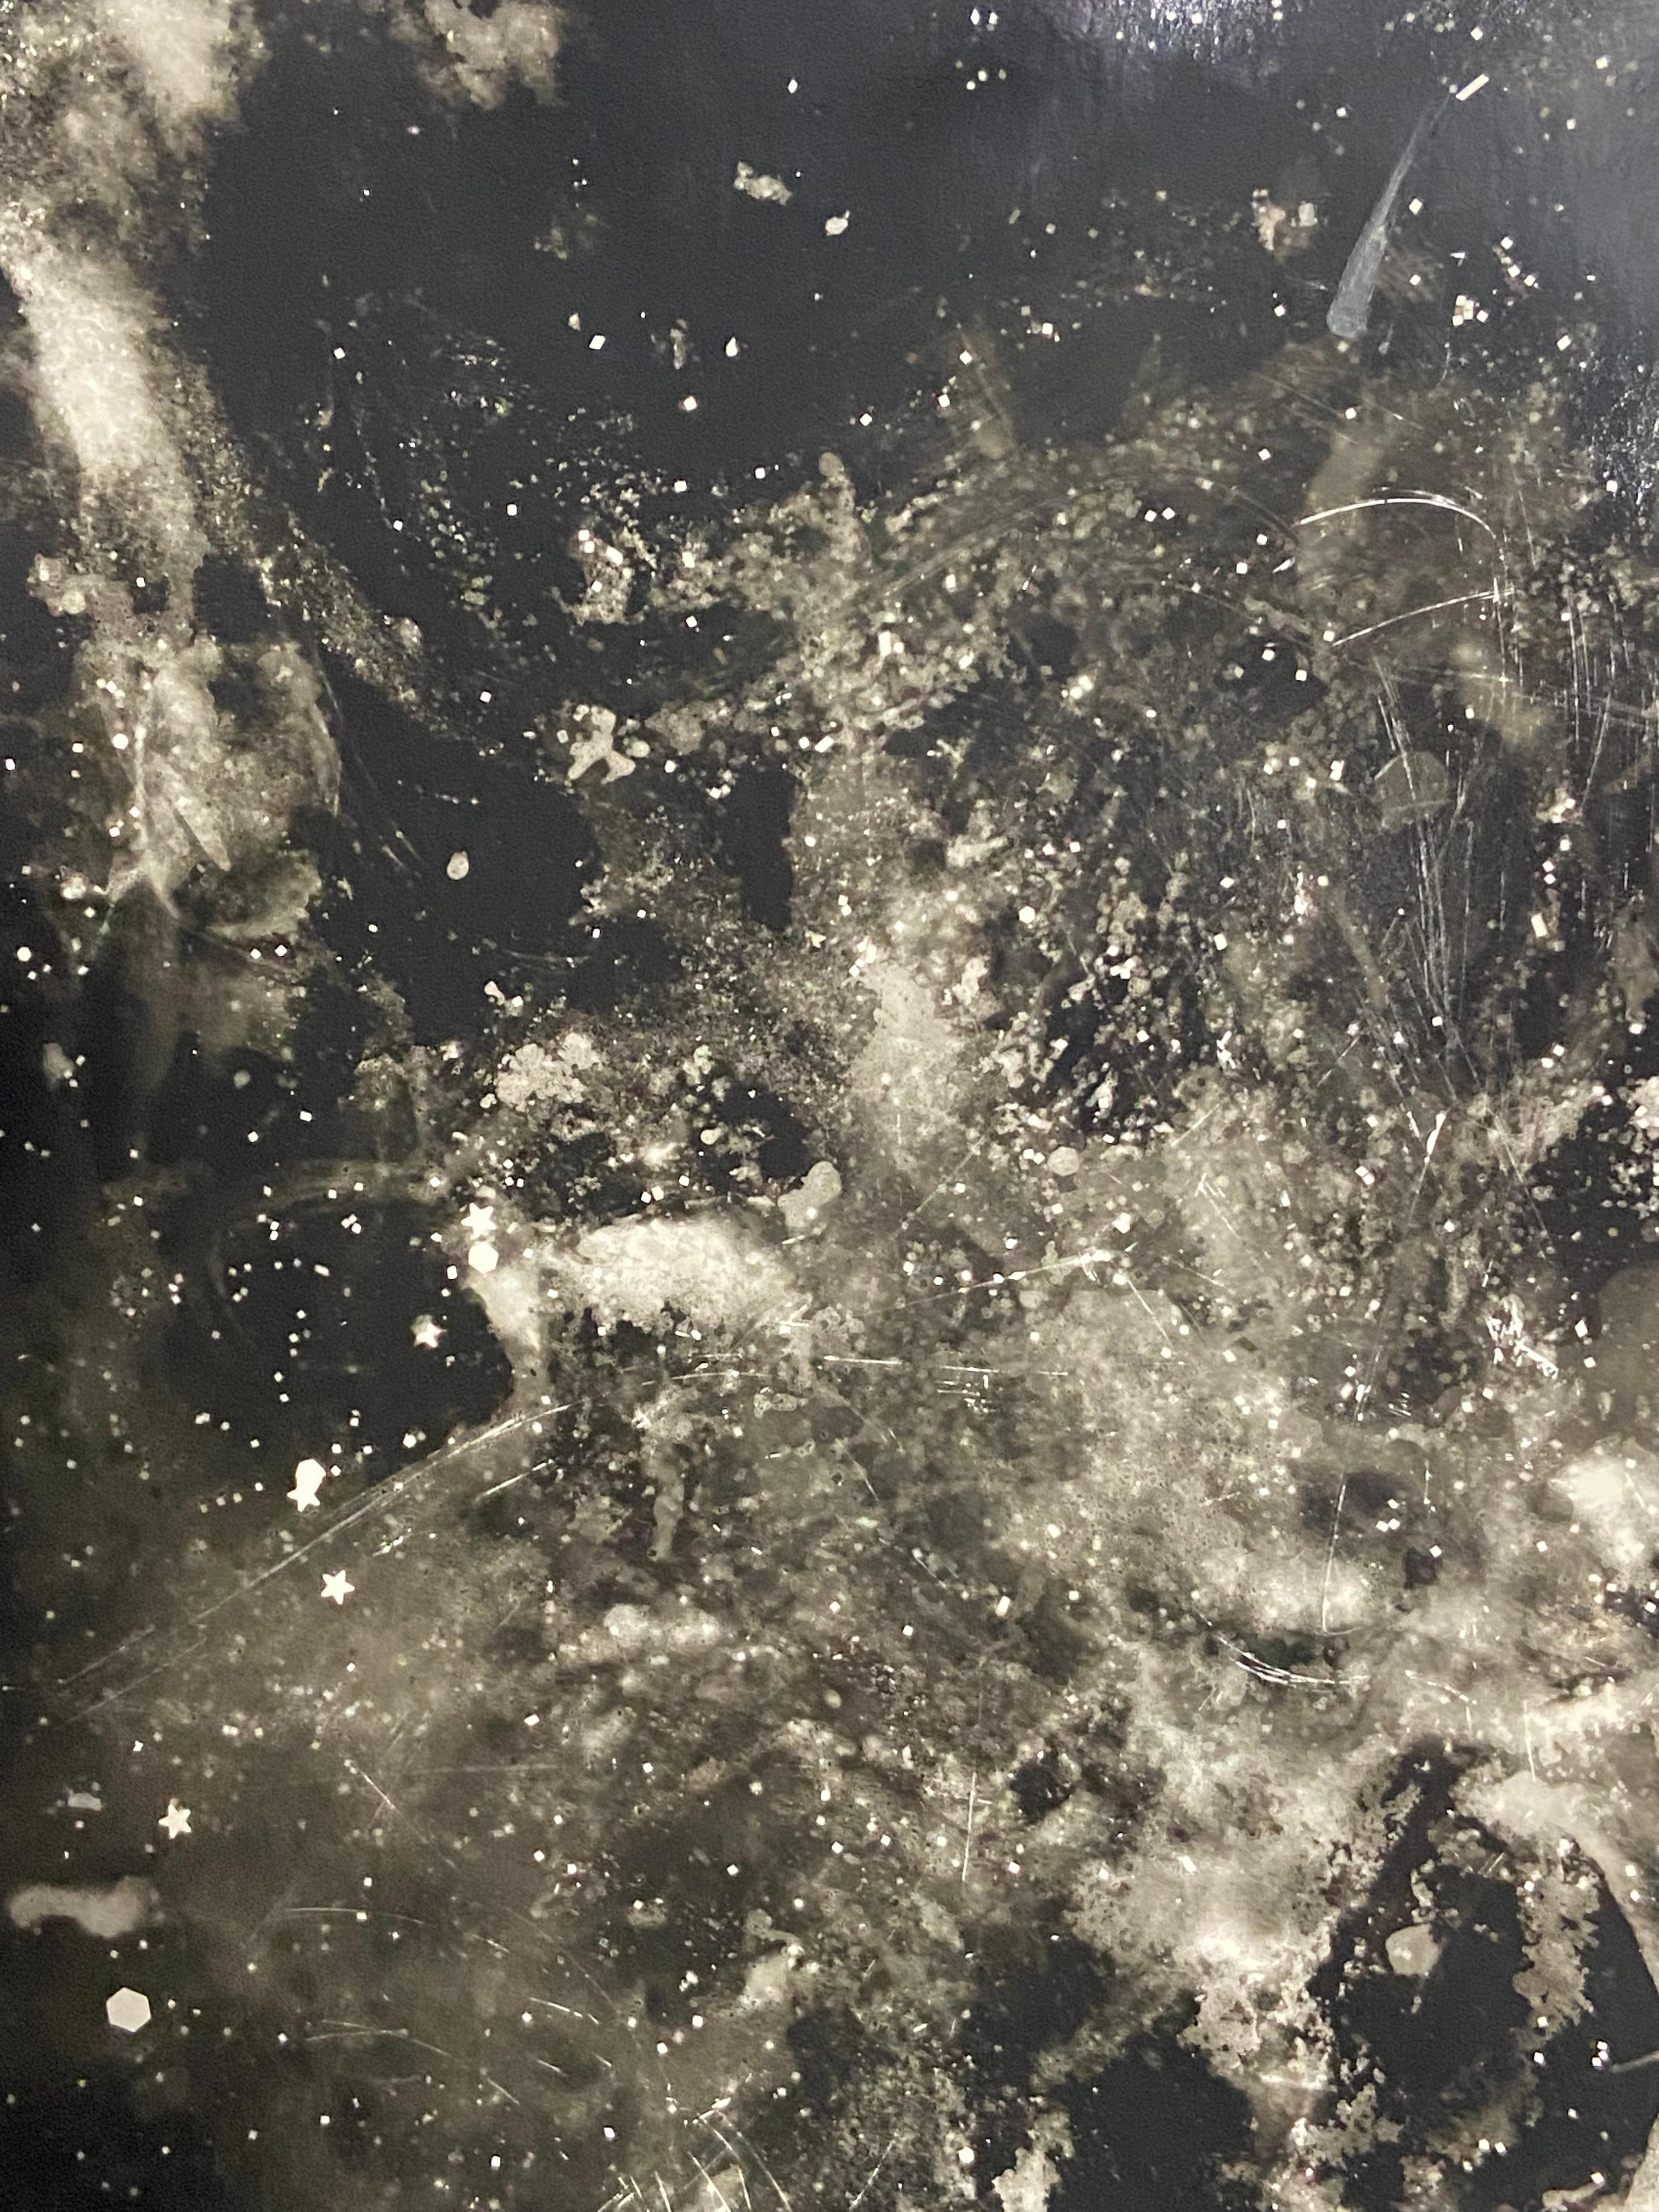 Starry Night - abstraktes, einzigartiges, zeitgenössisches Fotogramm aus Silbergelatinesatin im Altprozess – Photograph von Kimberly Schneider Photography